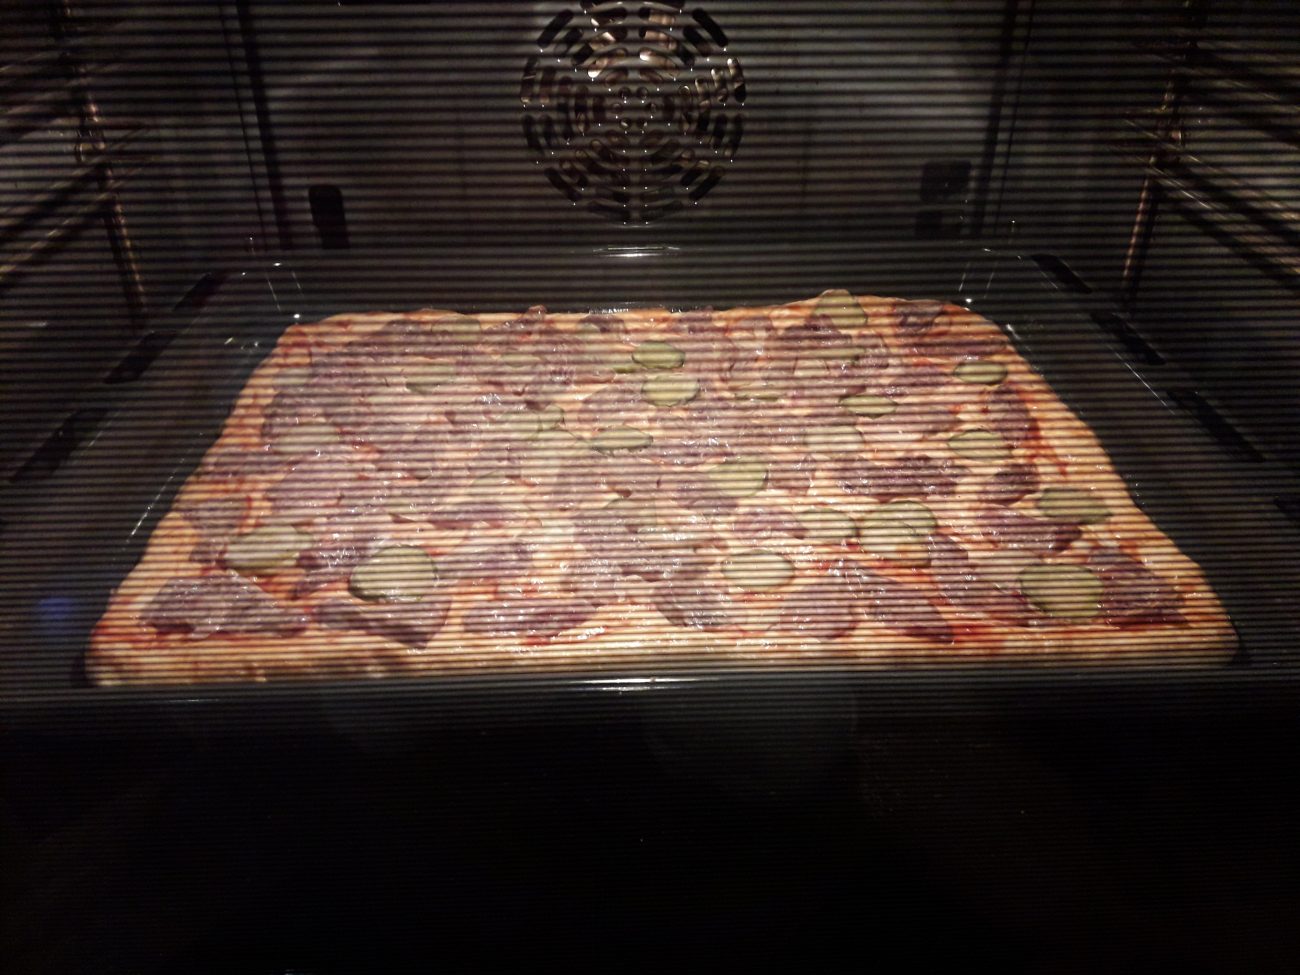 большая пицца на протвине в духовке фото 82